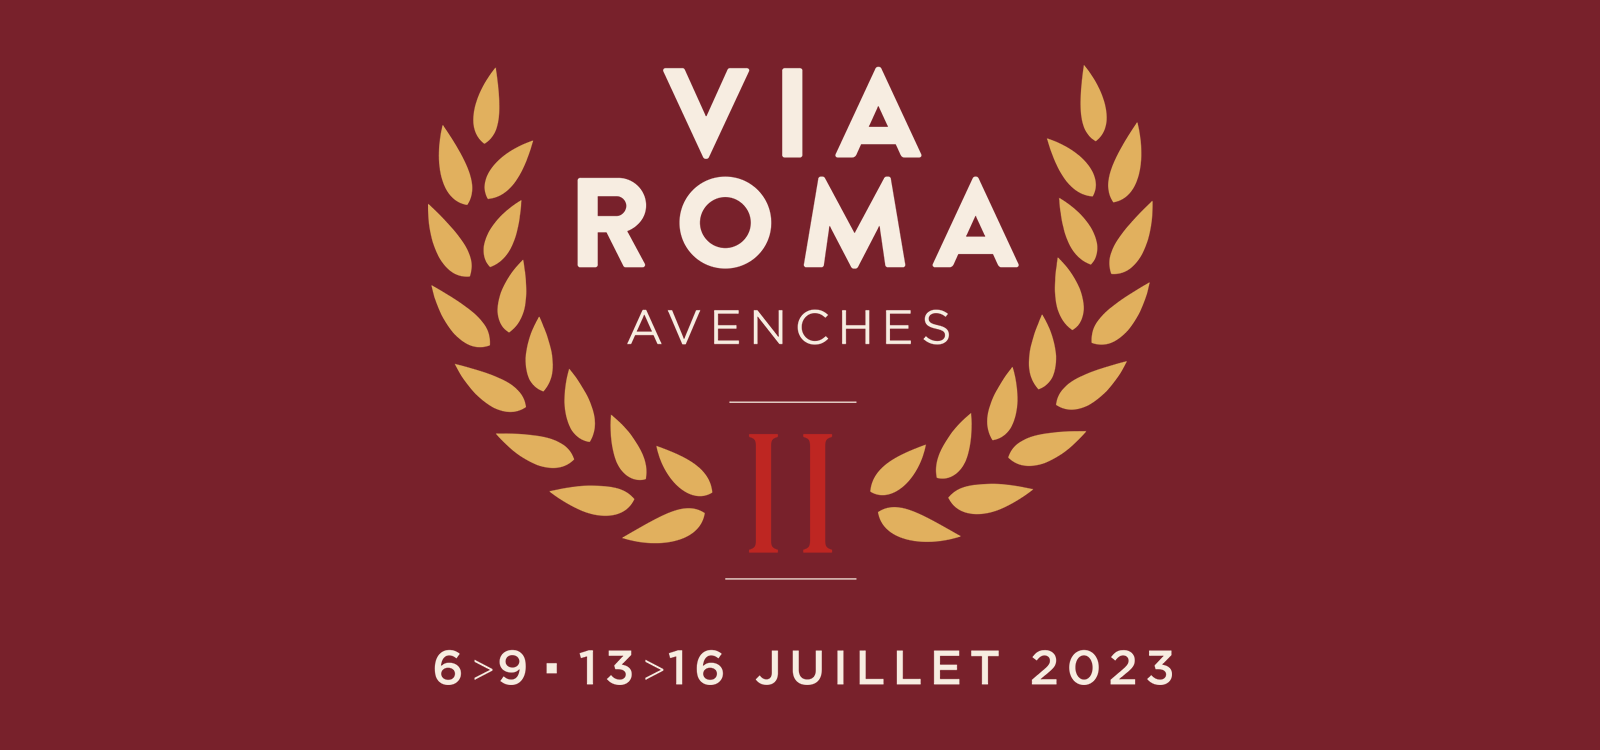 Saremo presenti a Via Roma Avenches con il nostro Vigna Moncucco 2022, il Vendemmia Tardiva 2020, l'Insolito 2021 e l'Insolito Collezione 2020